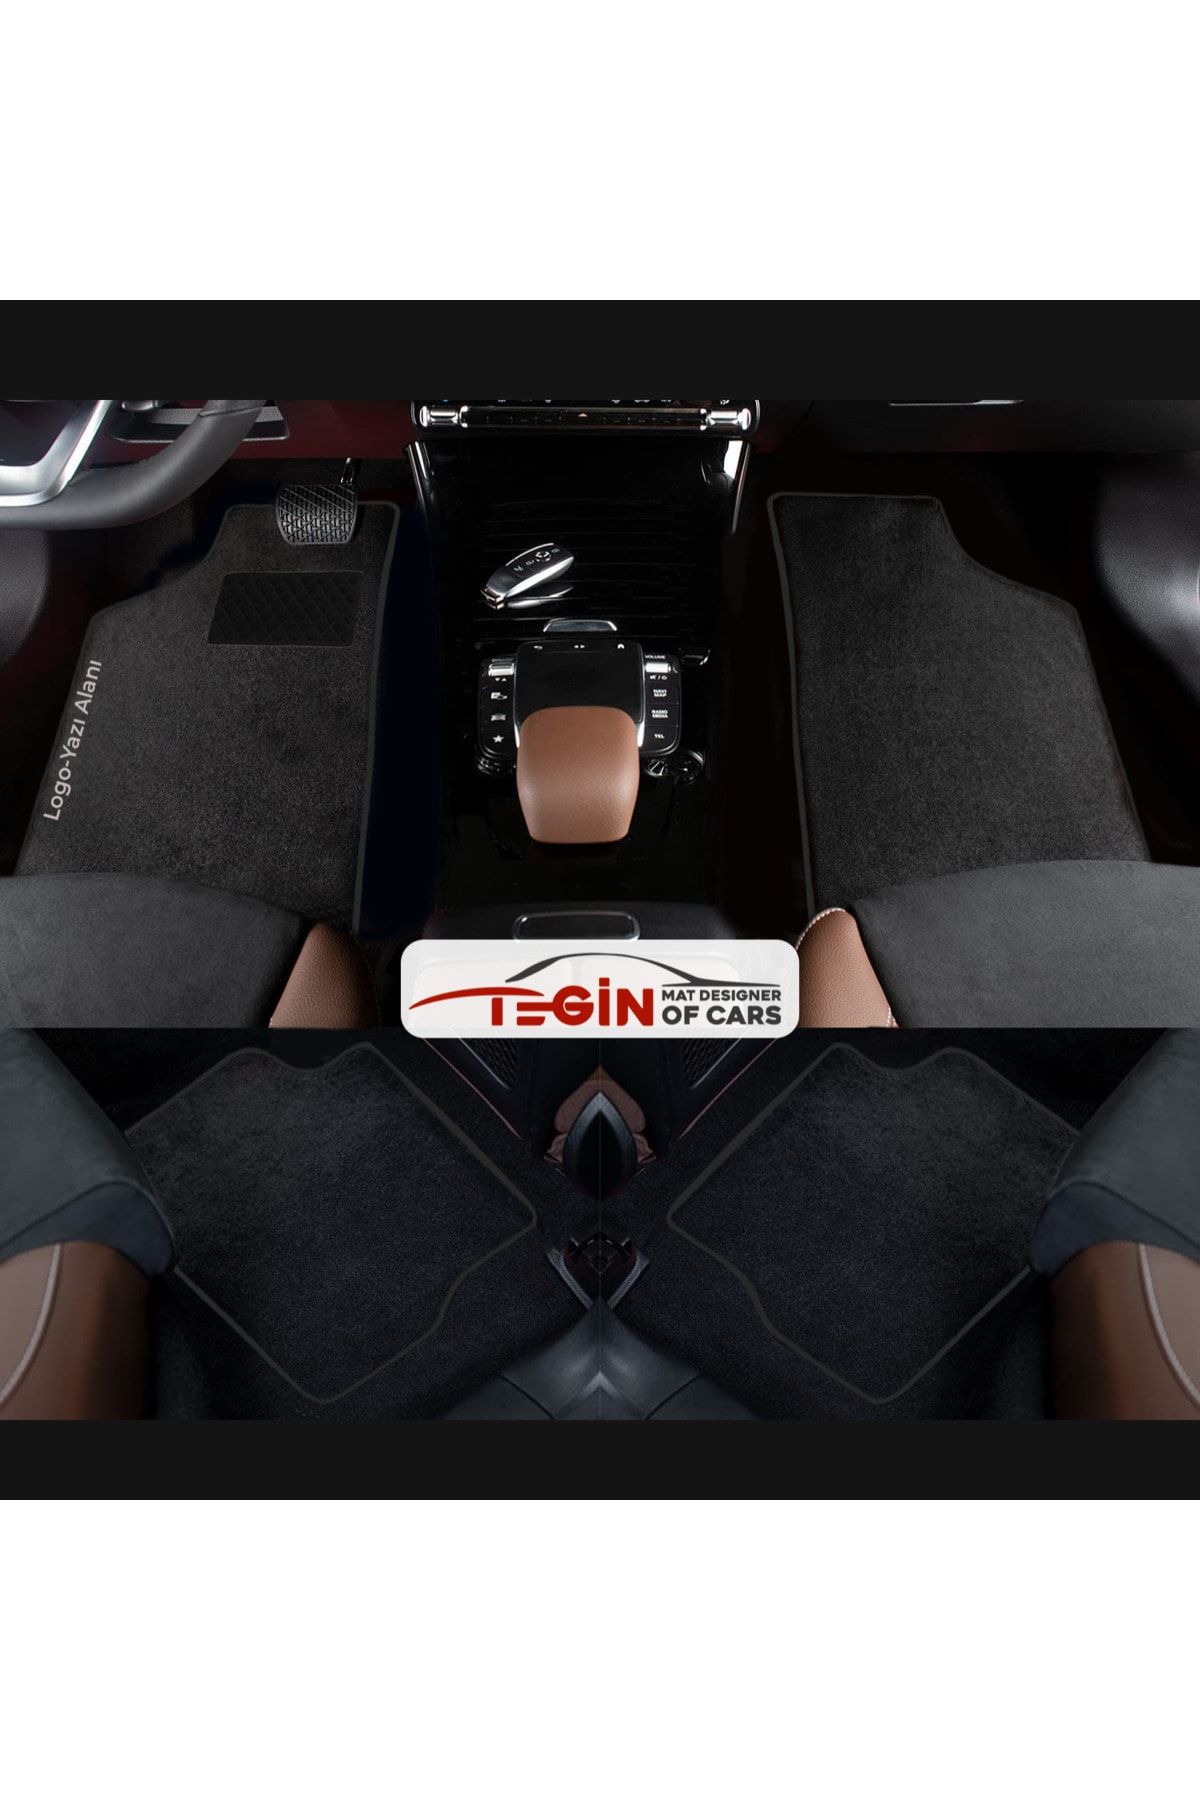 Tegin Mat Designer Of Cars Volkwagen Golf 5 Aracınıza Özel Prime Siyah Halı Siyah Kenar Halı Paspas